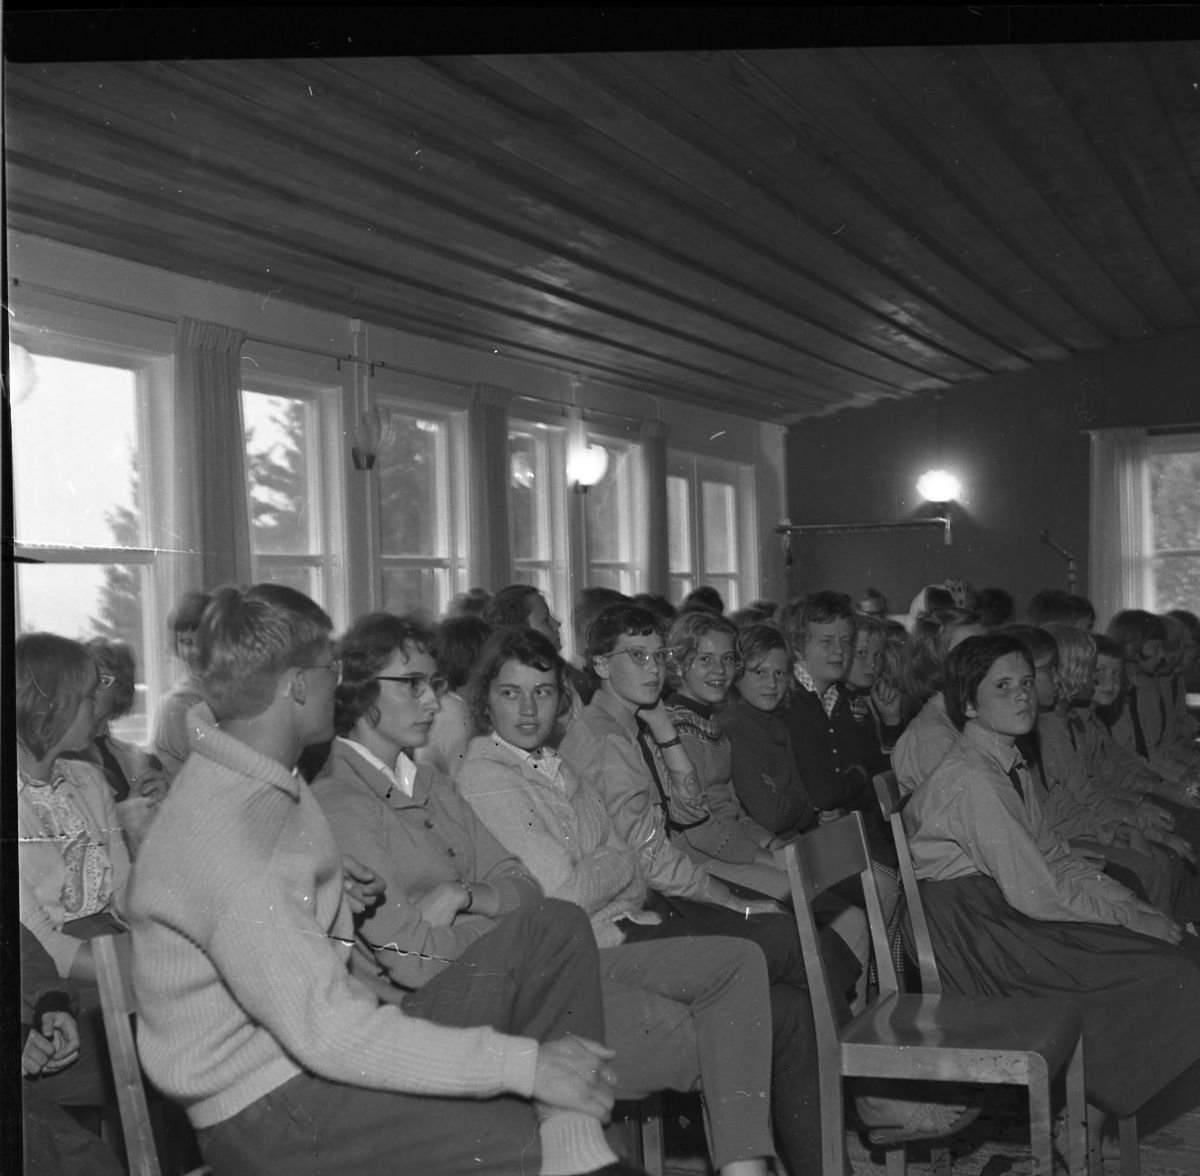 Kvinnor och män och några barn sitter och lyssnar på en talare som inte syns i bild. Vissa tittar mot kameran.